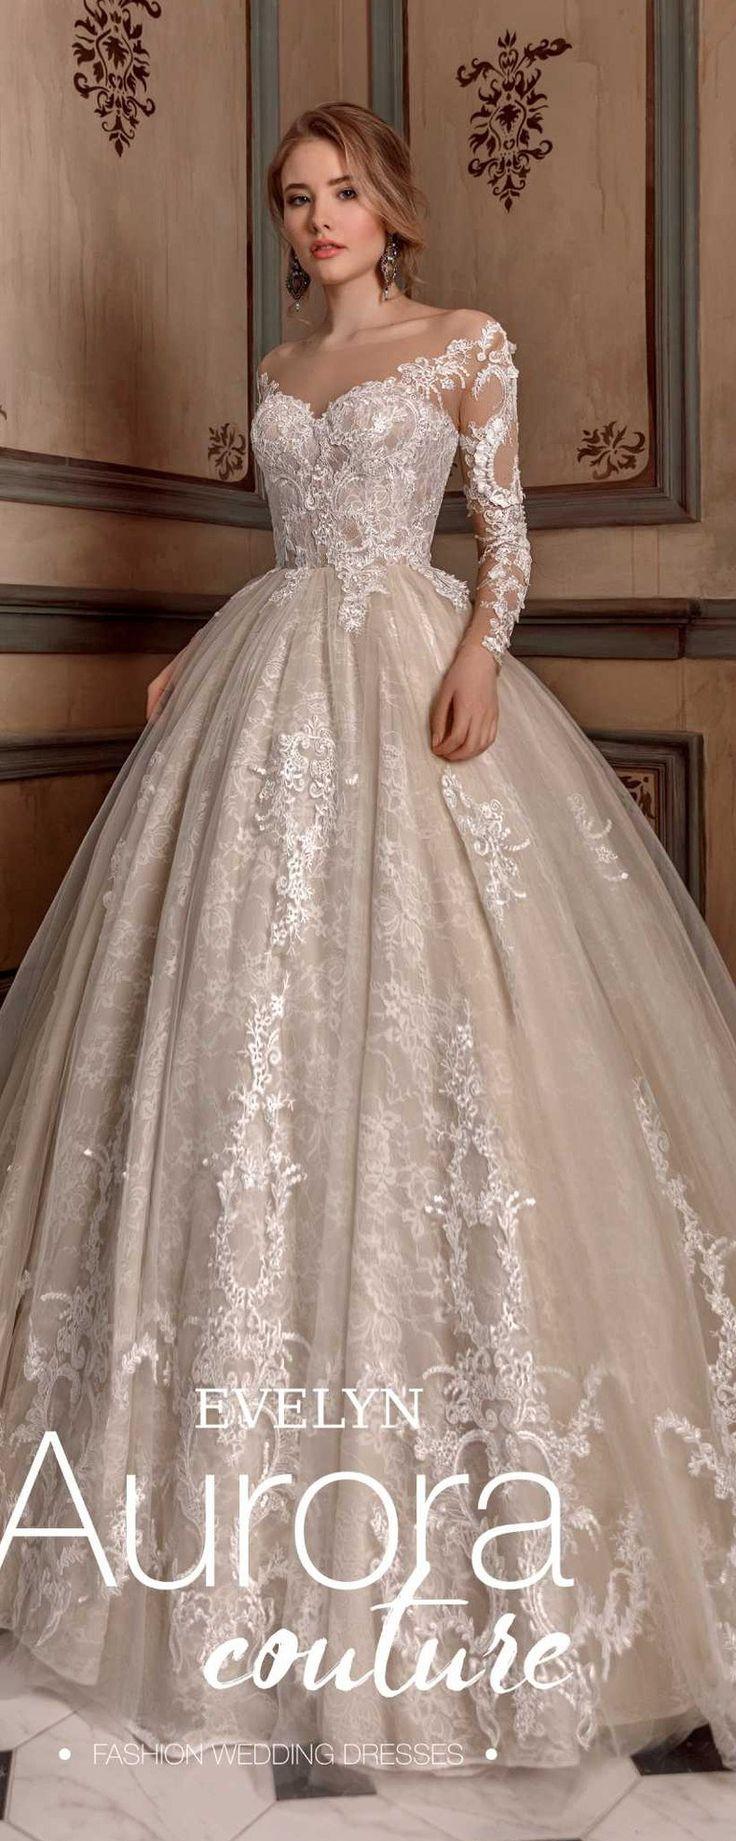 Wedding - Ball Gown, Wedding Dress, EVELYN, Wedding Dresses, Bridal Dress, Bridal Gown